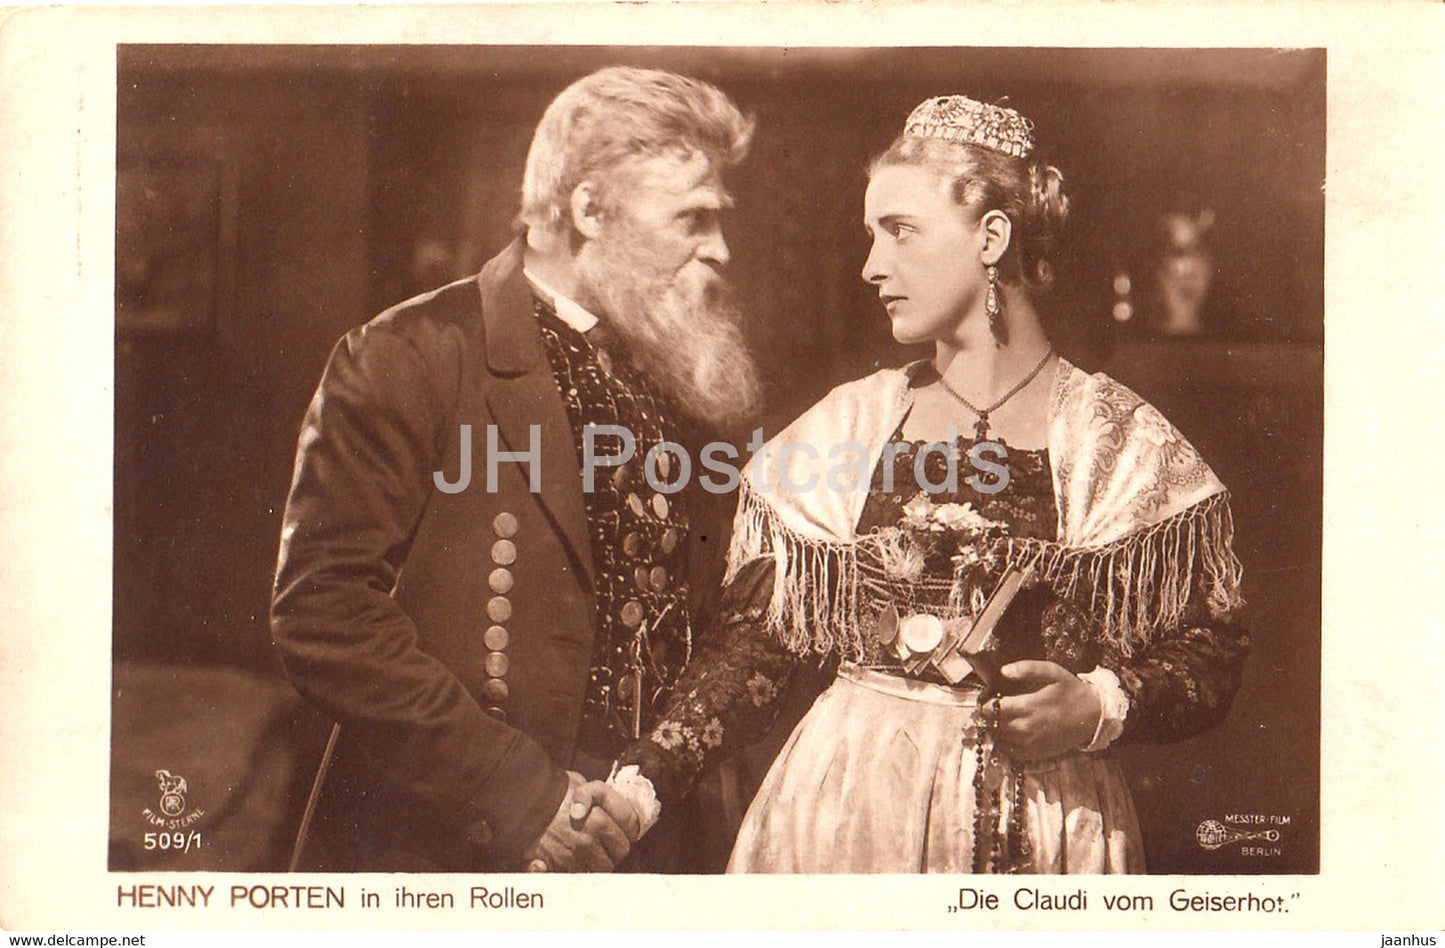 German actress Henny Porten in Ihren Rollen - Die Claudi vom Geiserhof - Film - Movie - Germany - old postcard - unused - JH Postcards